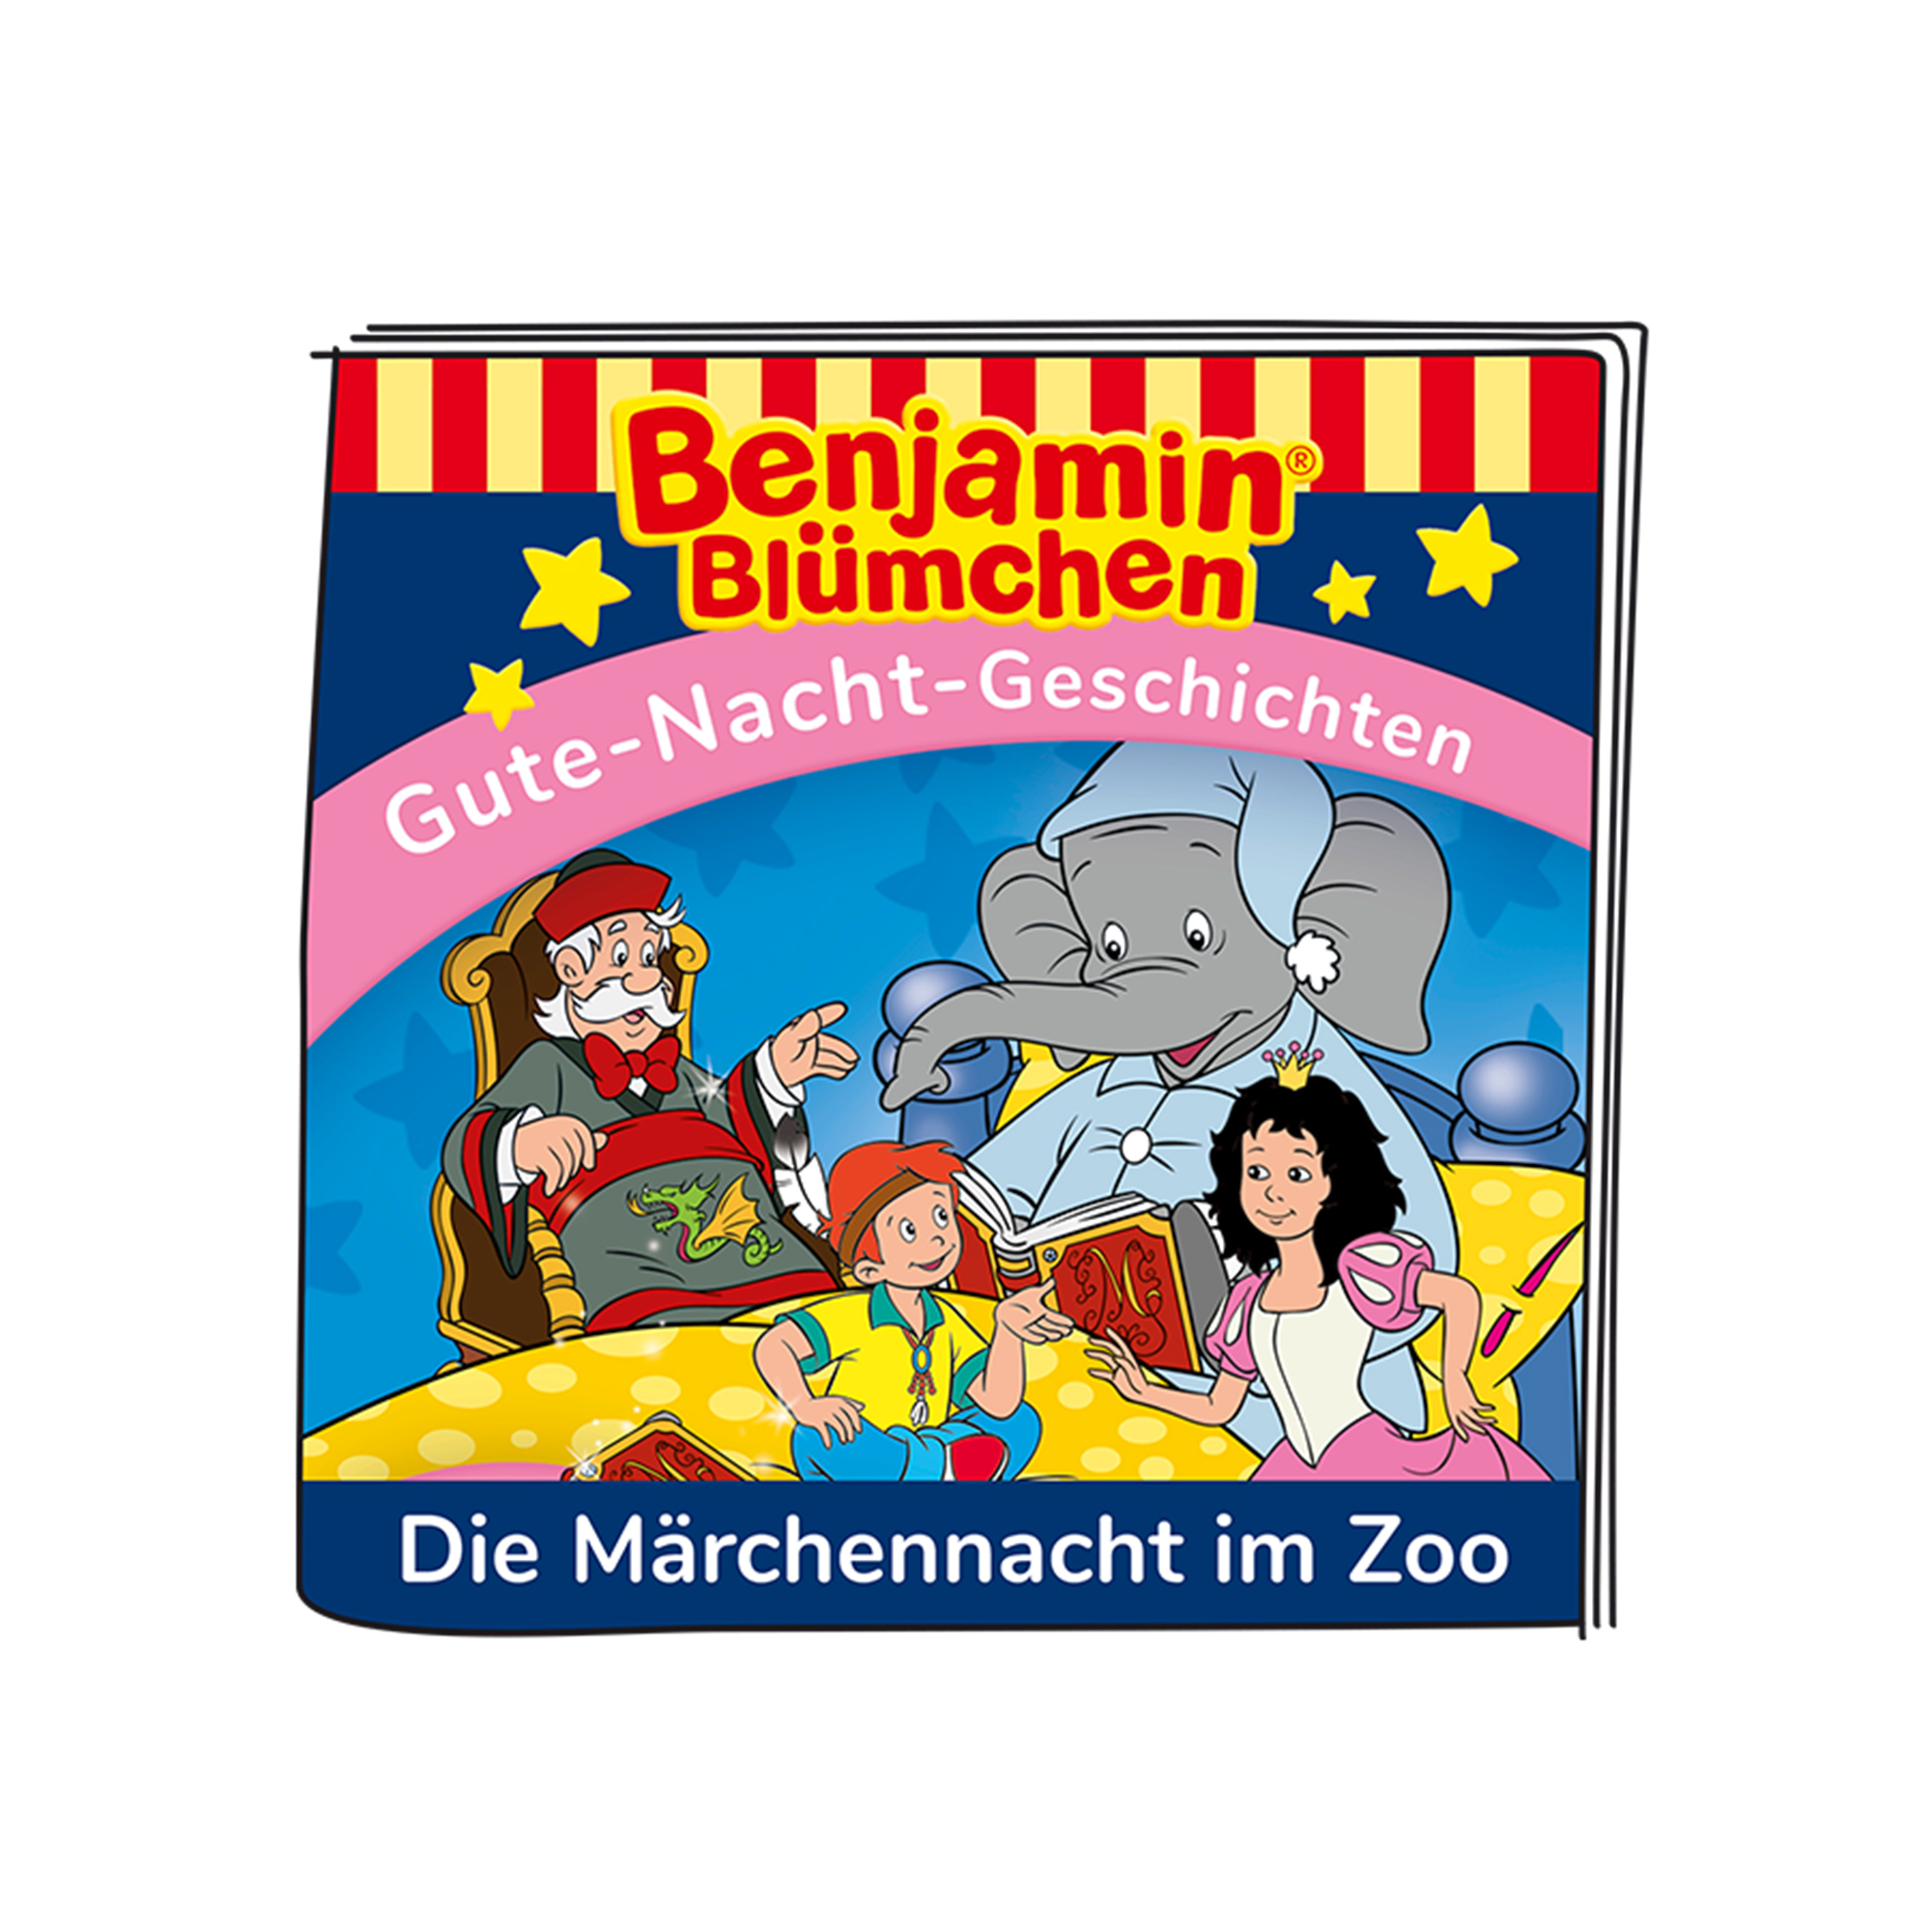 Blümchen Zoo Märchennacht Benjamin Figur BOXINE Die im Hörfigur Tonies